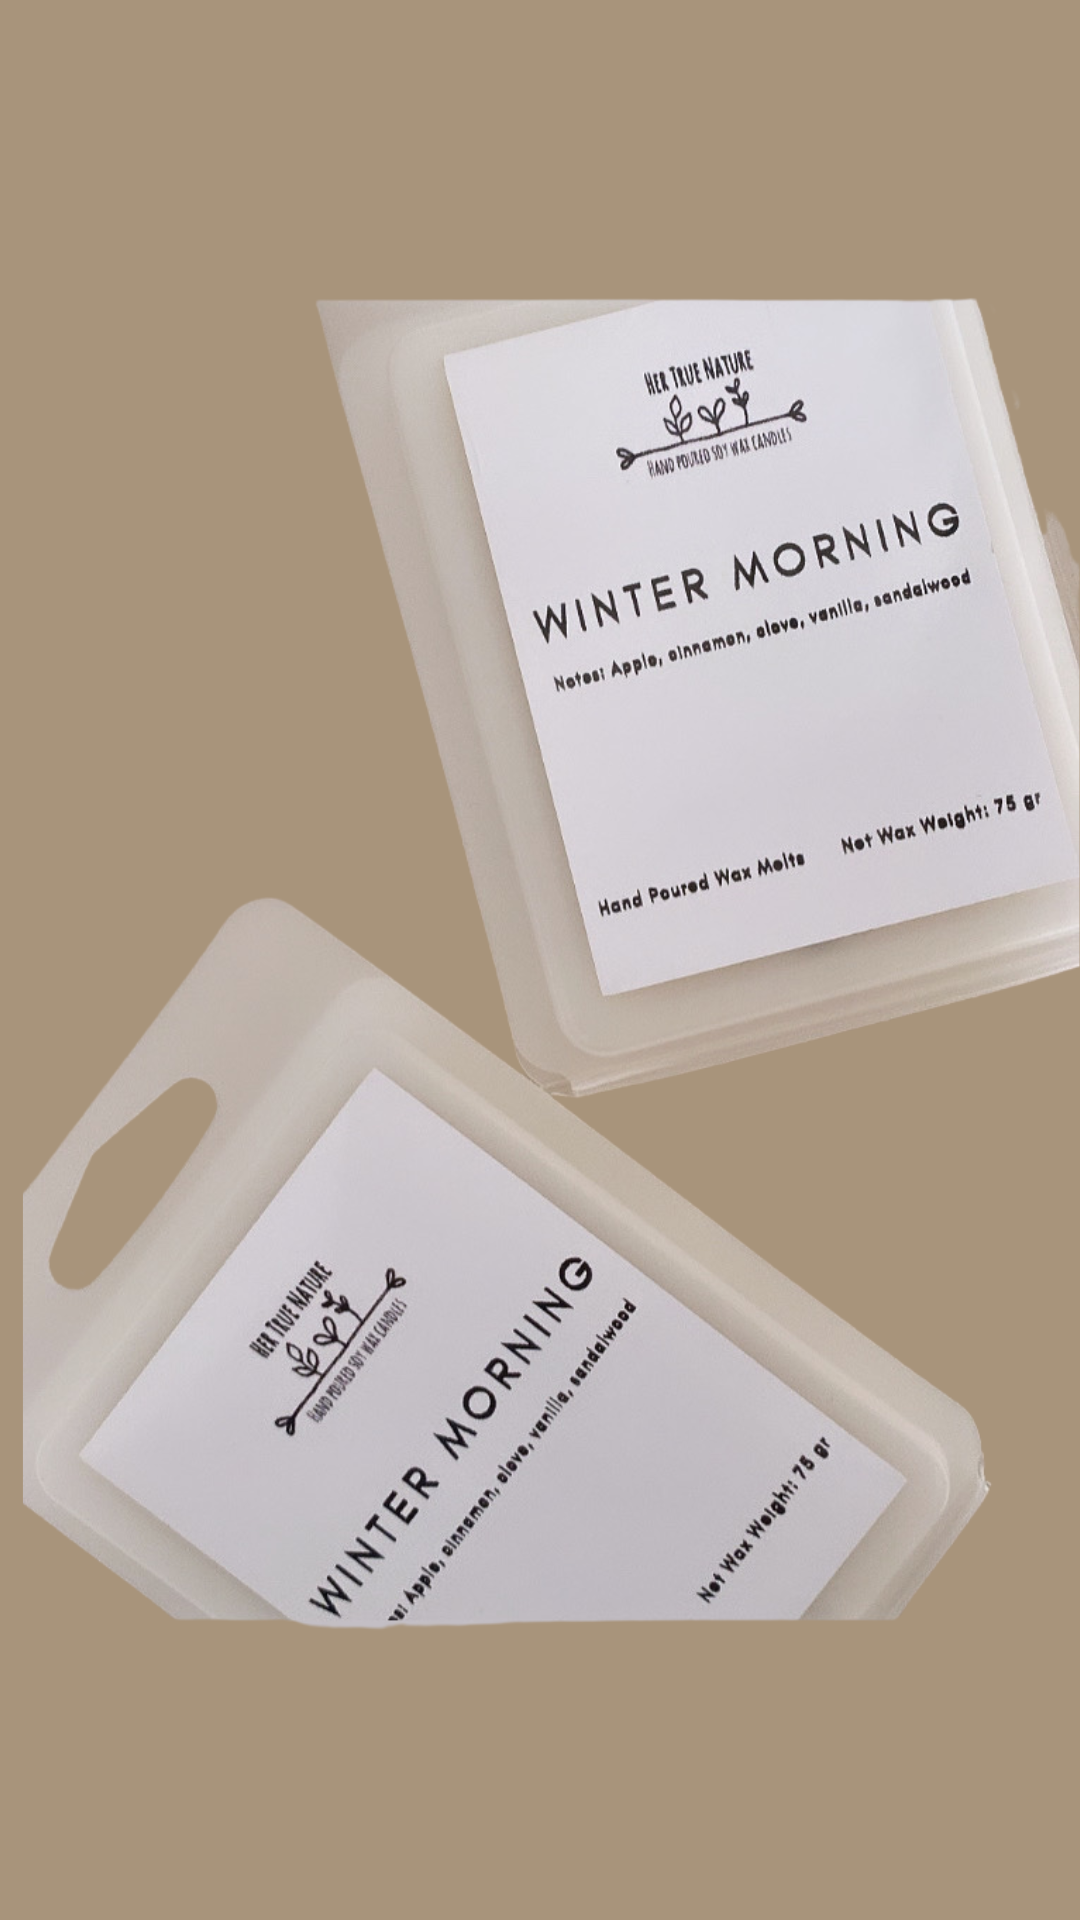 Winter Morning wax melt pack